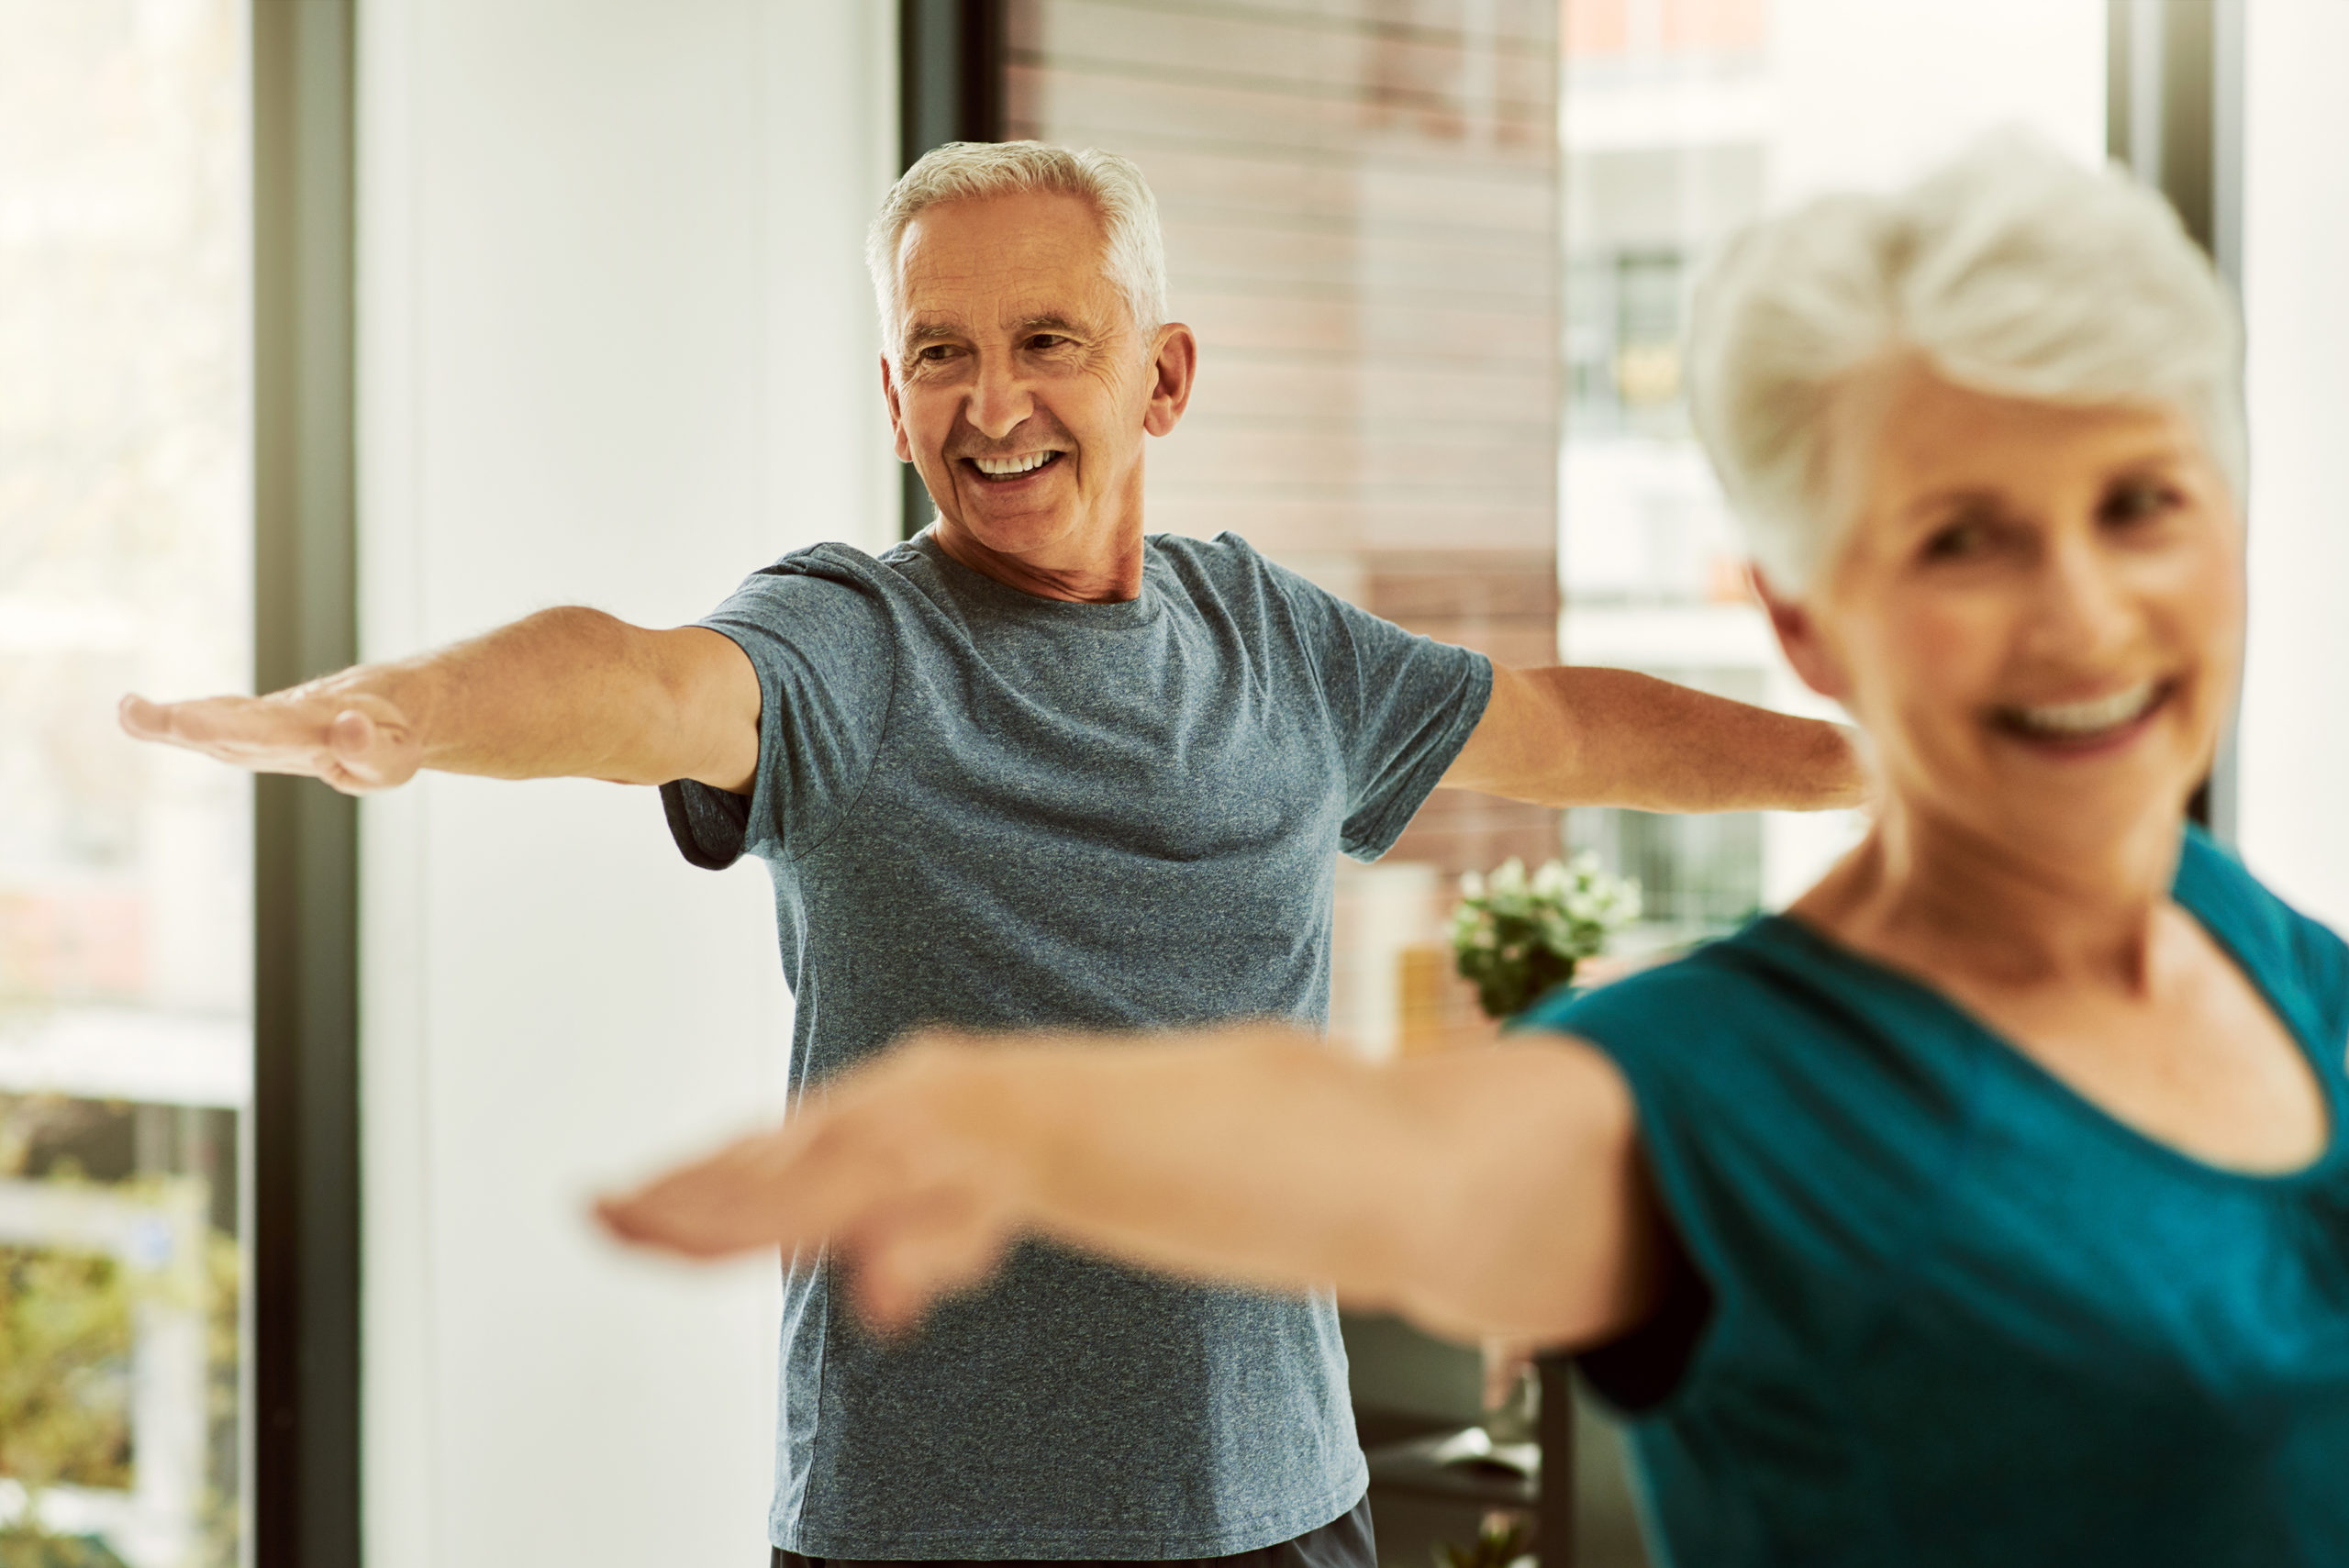 COVID-19 Fitness Tips for Seniors | Grand Oaks Blog